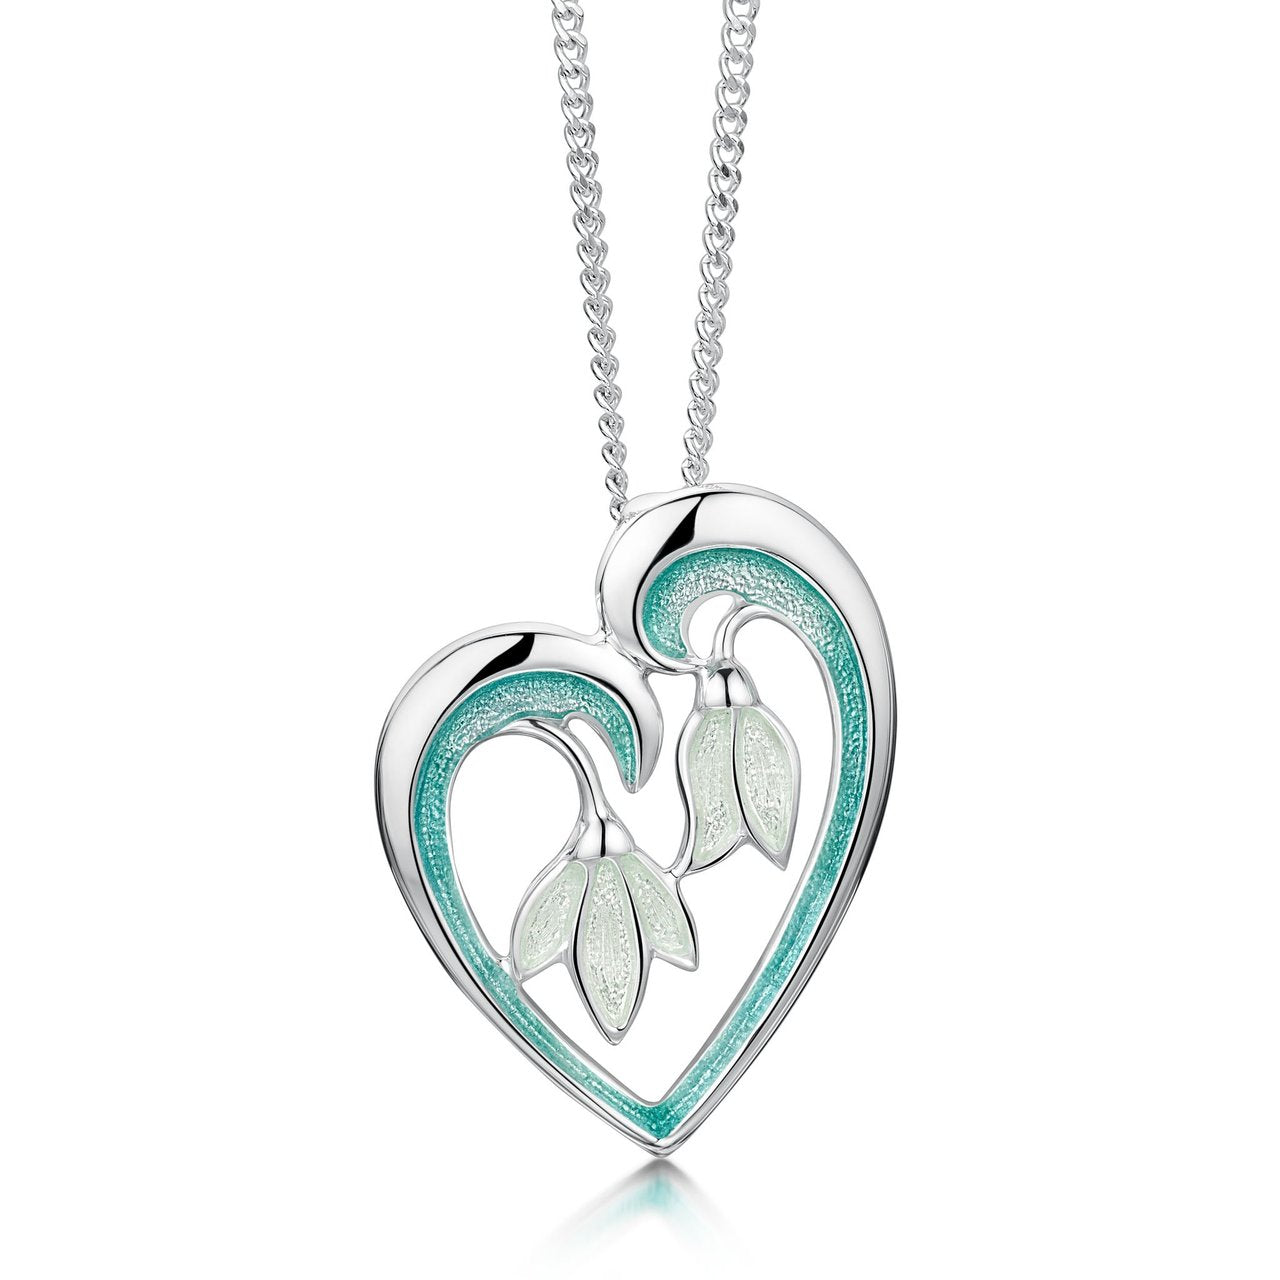 Snowdrop Sterling Silver Heart Pendant in Leaf Enamel